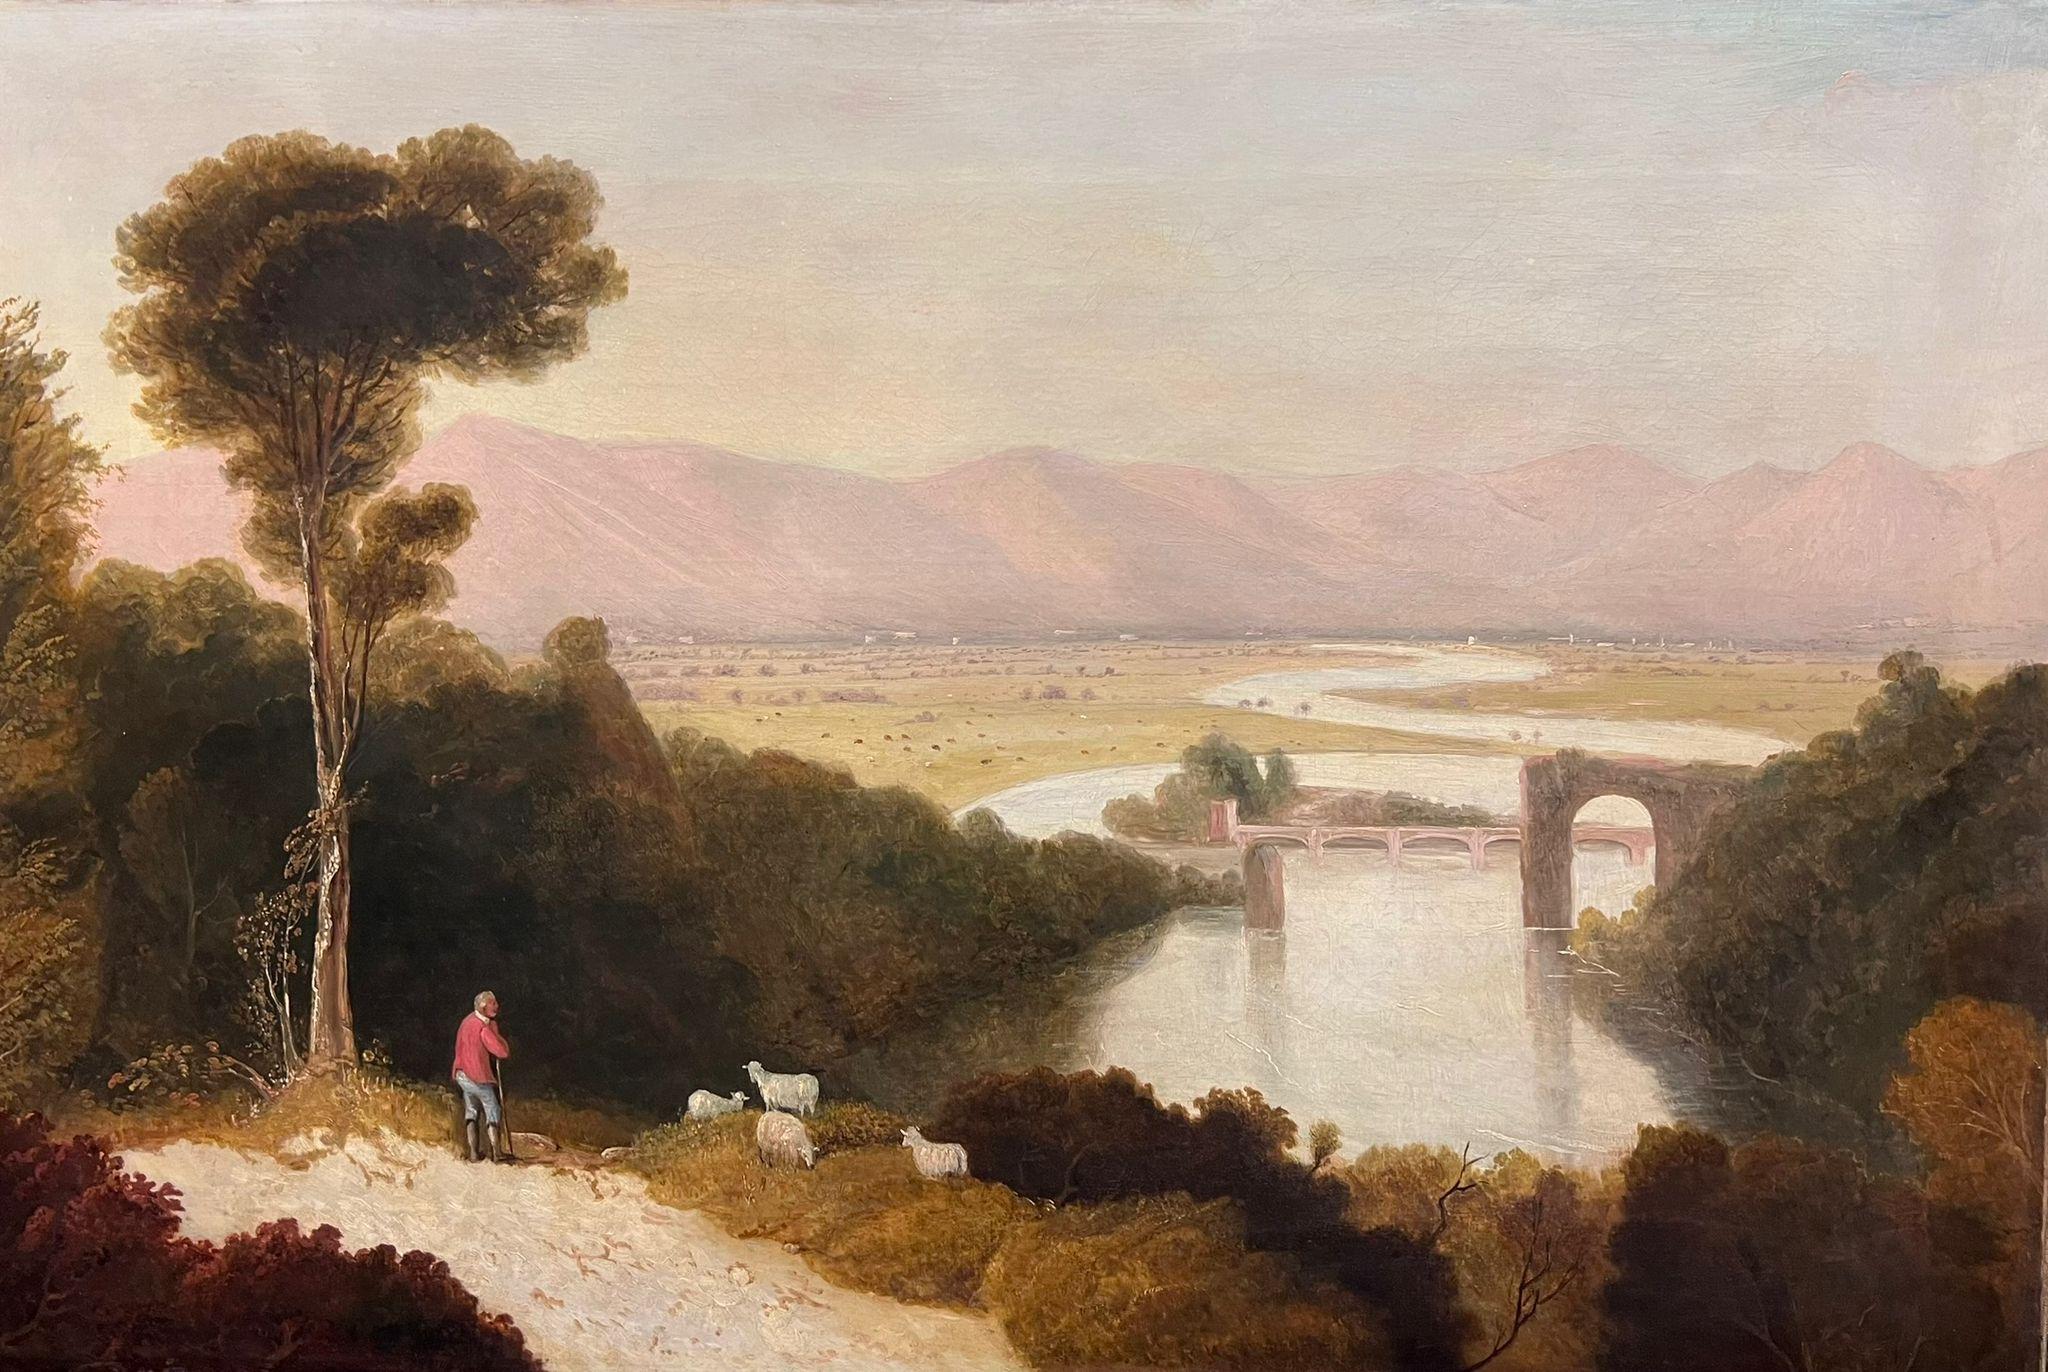 Très grande peinture à l'huile de paysage du début du 19e siècle avec des figures et des vues lointaines